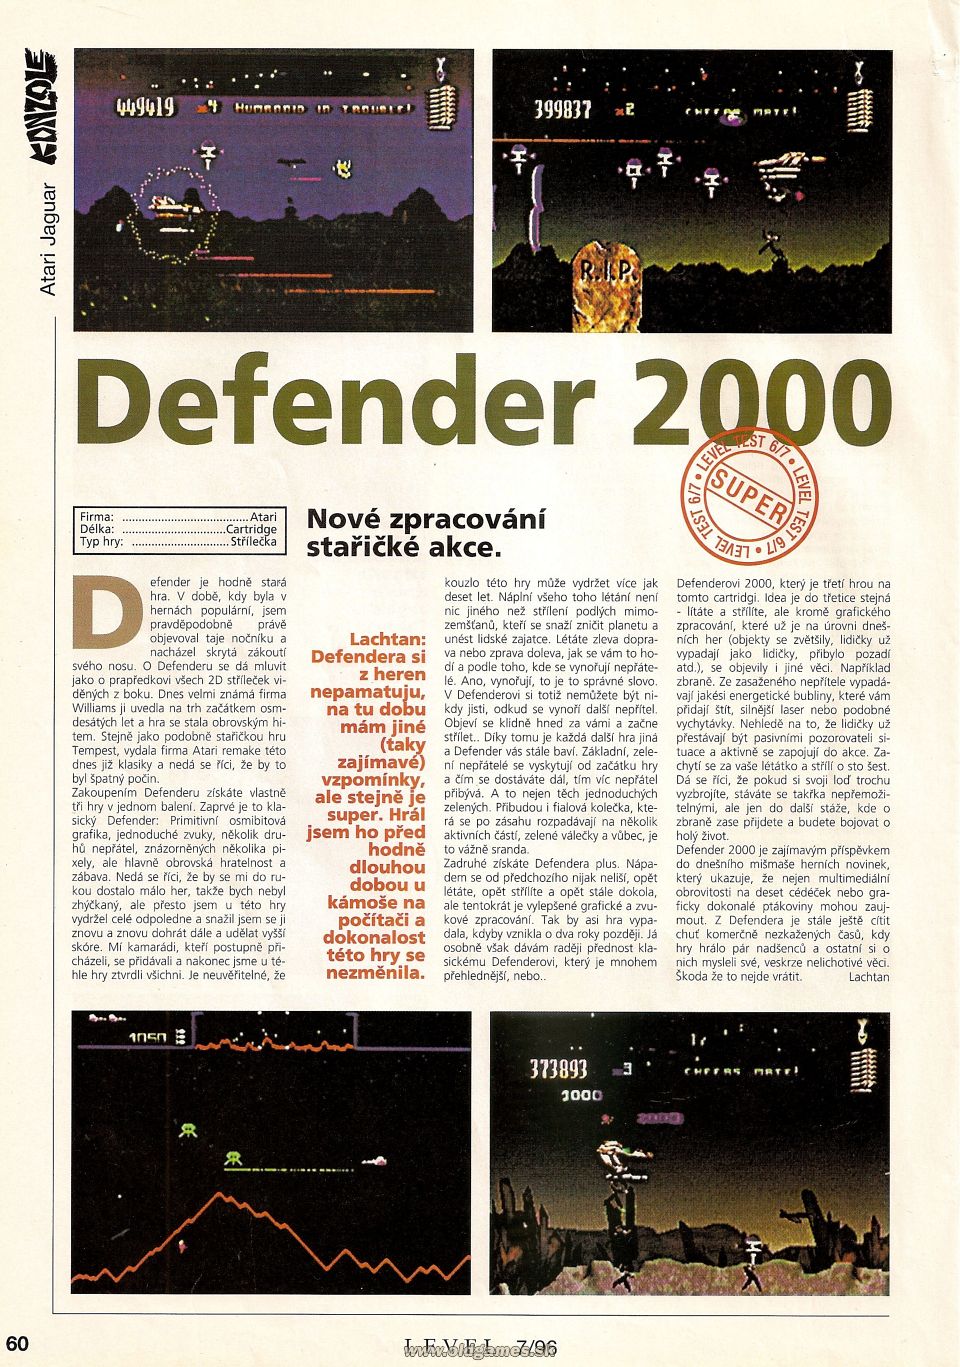 Defender 2000 (Atari Jaguar)